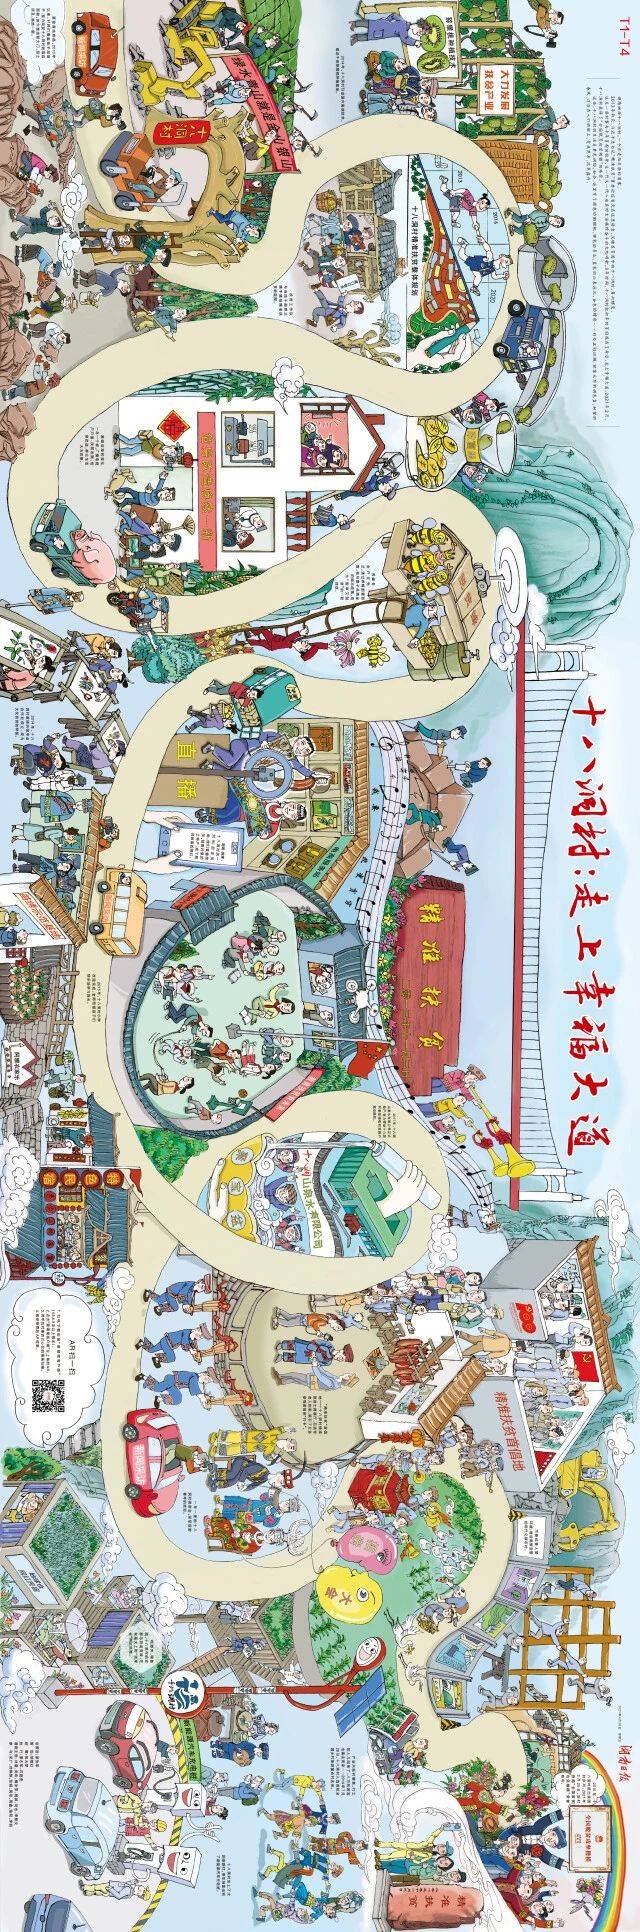 湖南日报首推全景式新闻漫画《十八洞村：走上幸福大道》-酷雷曼VR全景